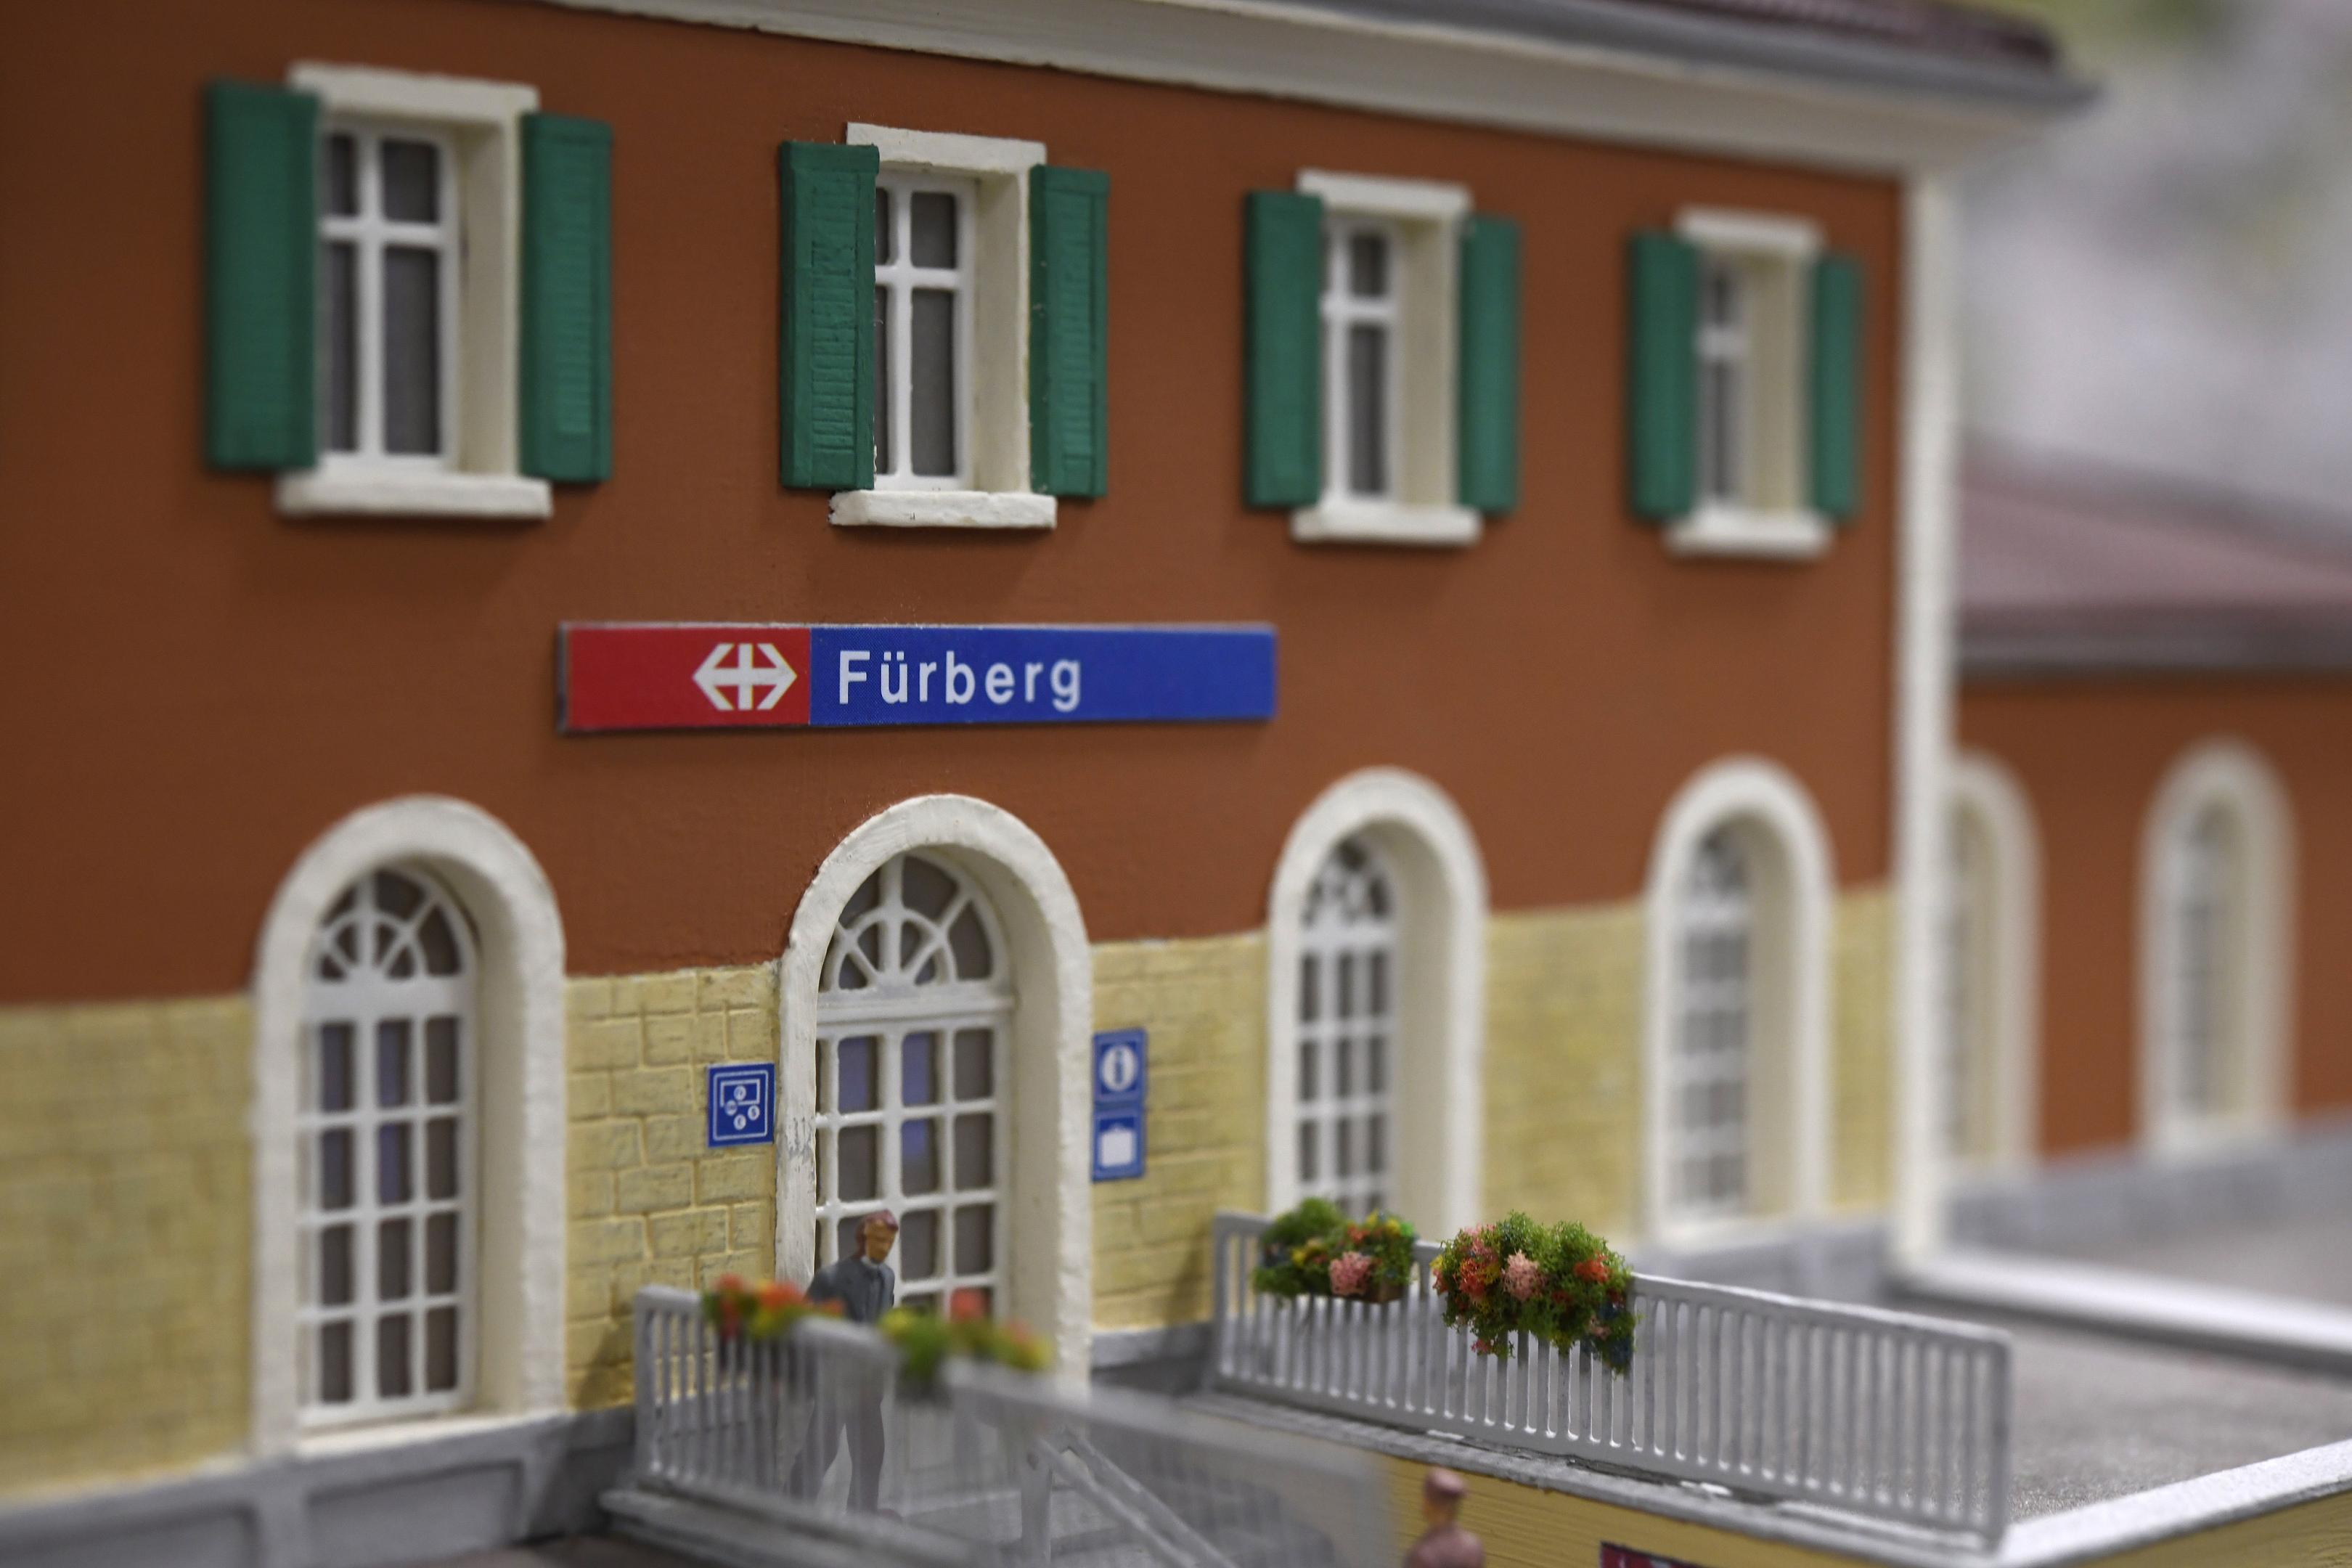 Der Bahnhof Fürberg existiert nur auf der Modelleisenbahnanlage von Kajetan Schwarz.